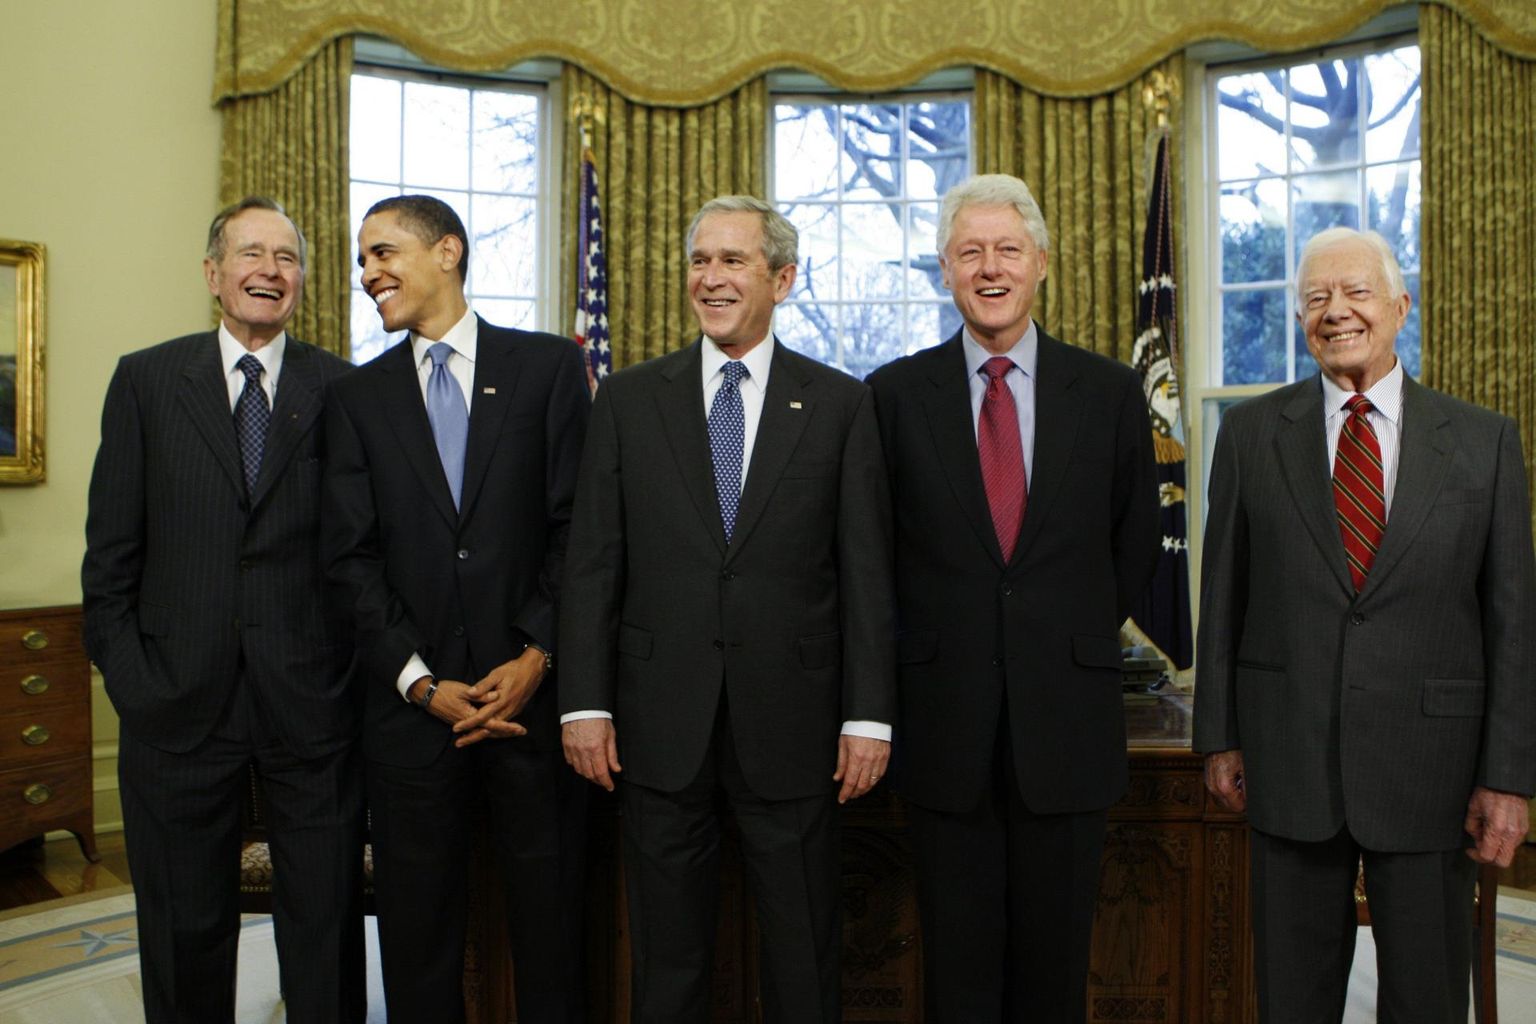 Kuigi vabariiklasi peetakse ettevõtjasõbralikeks, on börside käekäik olnud tugevam demokraatidest USA presidentide Bill Clintoni ja Barack Obama ametiaegadel. Fotol (vasakult) George H. W. Bush, Obama, George W. Bush, Clinton ja Jimmy Carter.